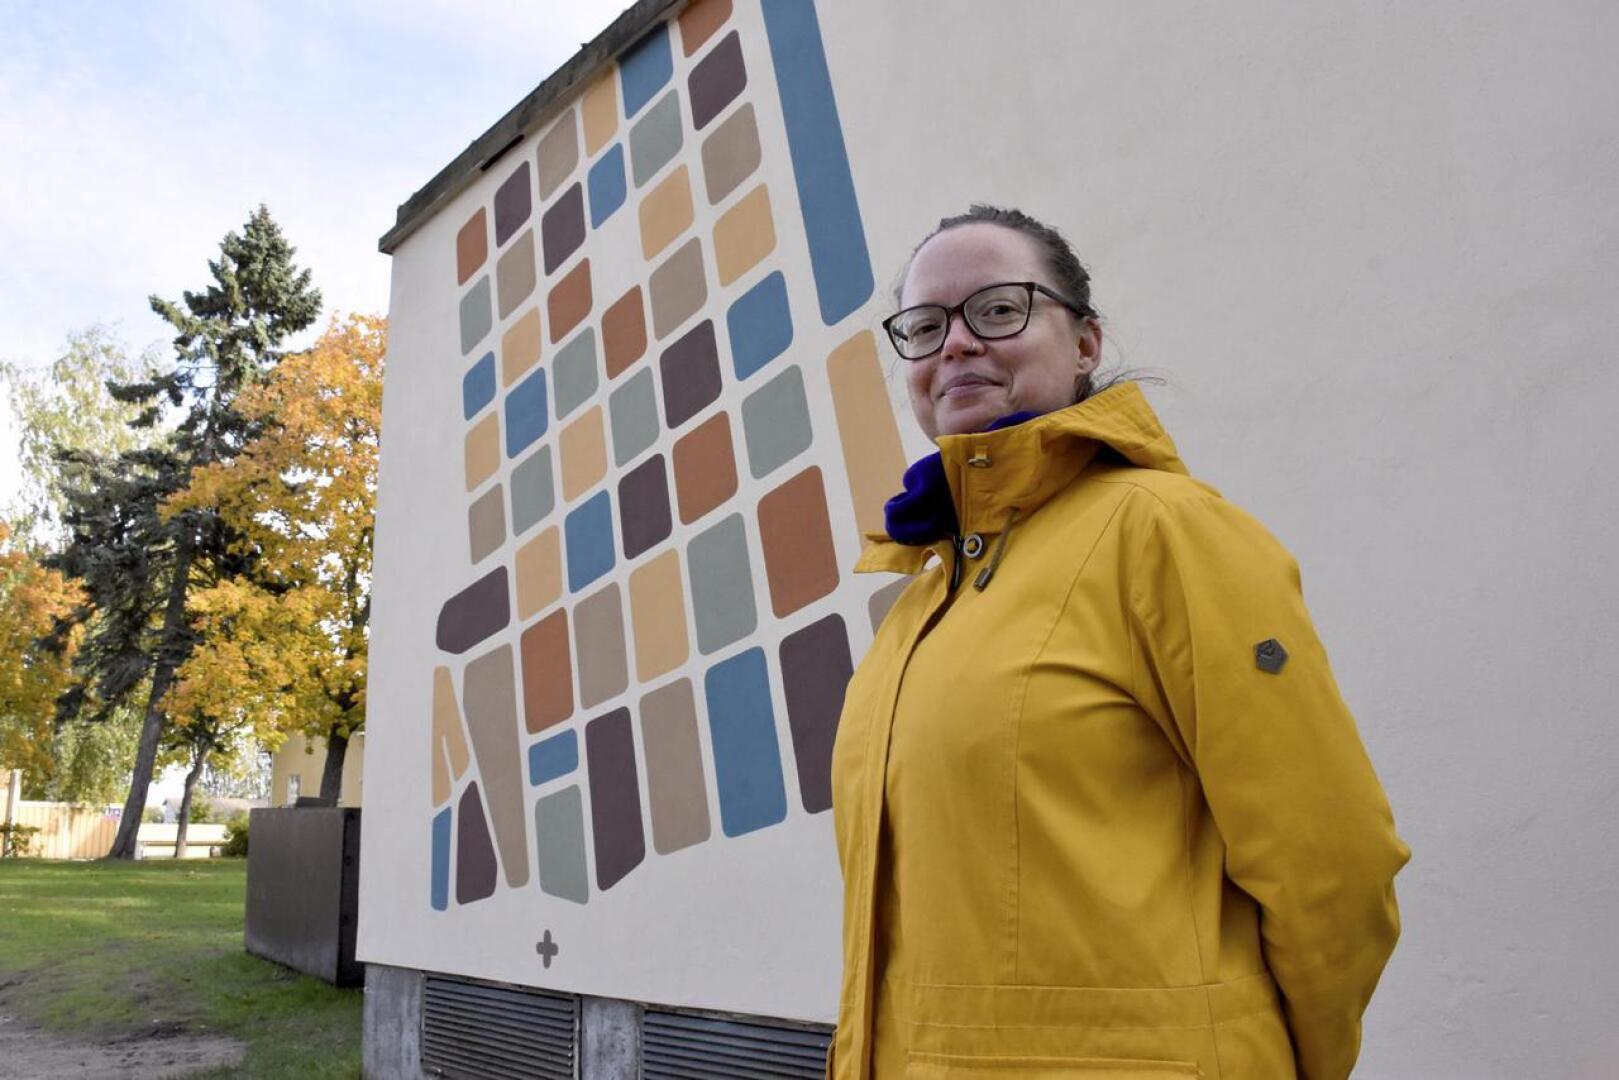 Sehän on Skata. Christa Friberg tutki Pohjoisnummen kartat monen sadan vuoden ajalta ja päätyi kertomaan alueen asemakaavan historian Aleksanterinpuiston muuntajan seinillä.